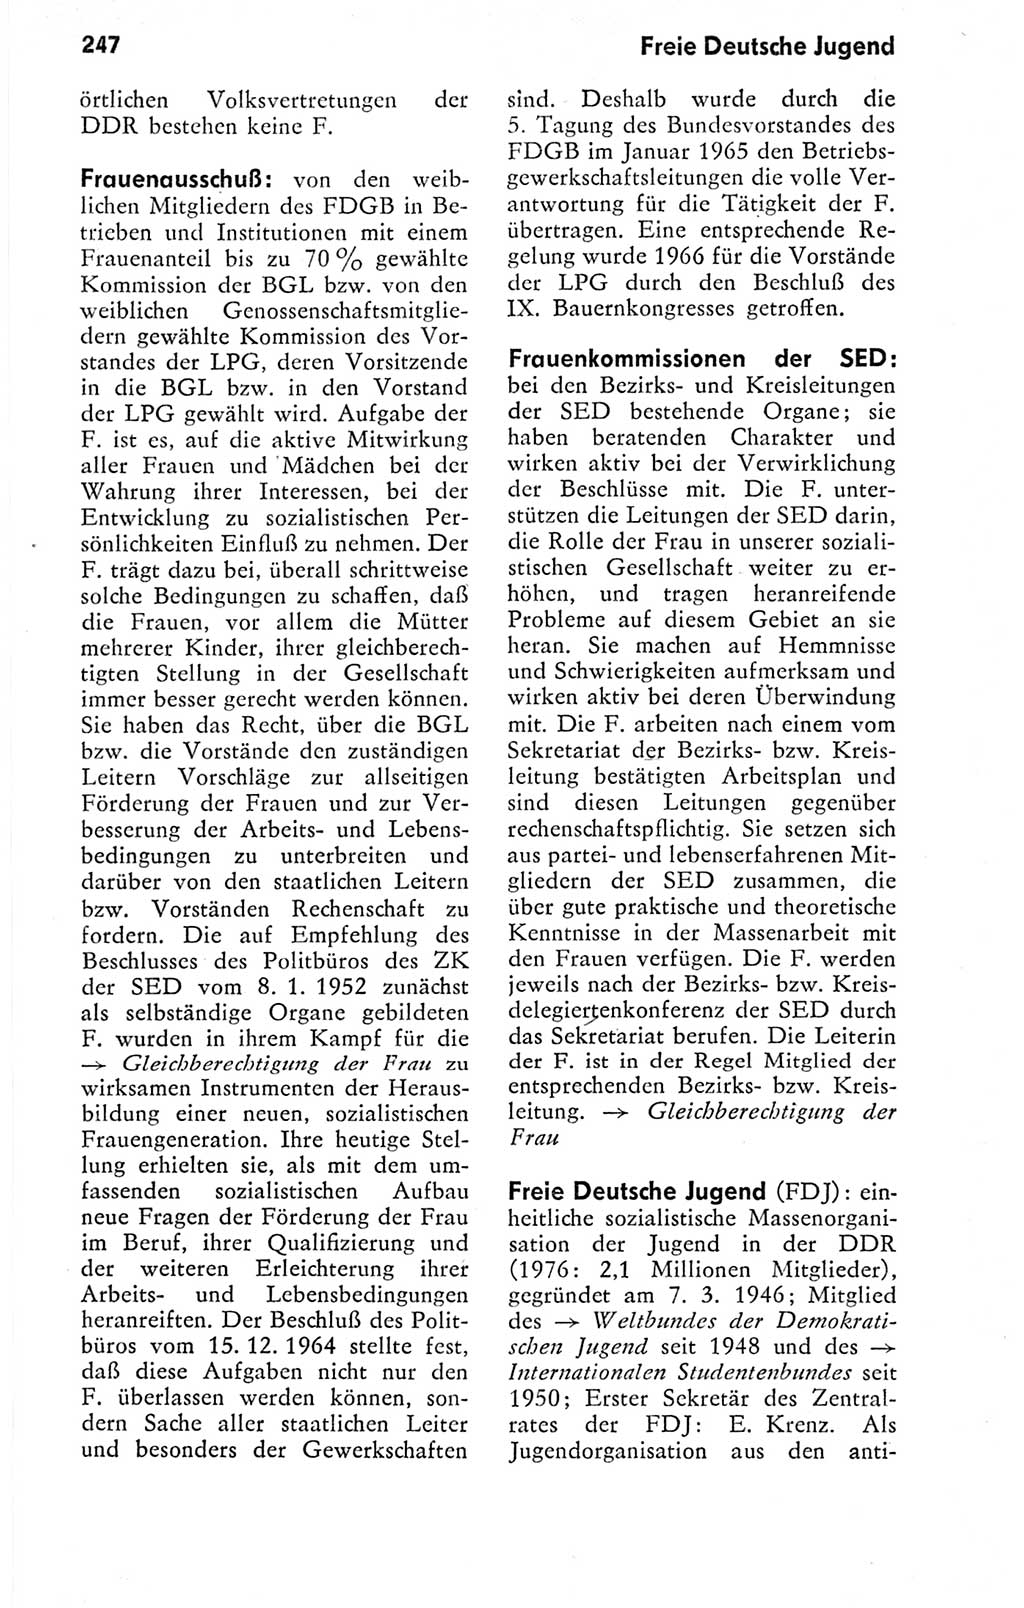 Kleines politisches Wörterbuch [Deutsche Demokratische Republik (DDR)] 1978, Seite 247 (Kl. pol. Wb. DDR 1978, S. 247)